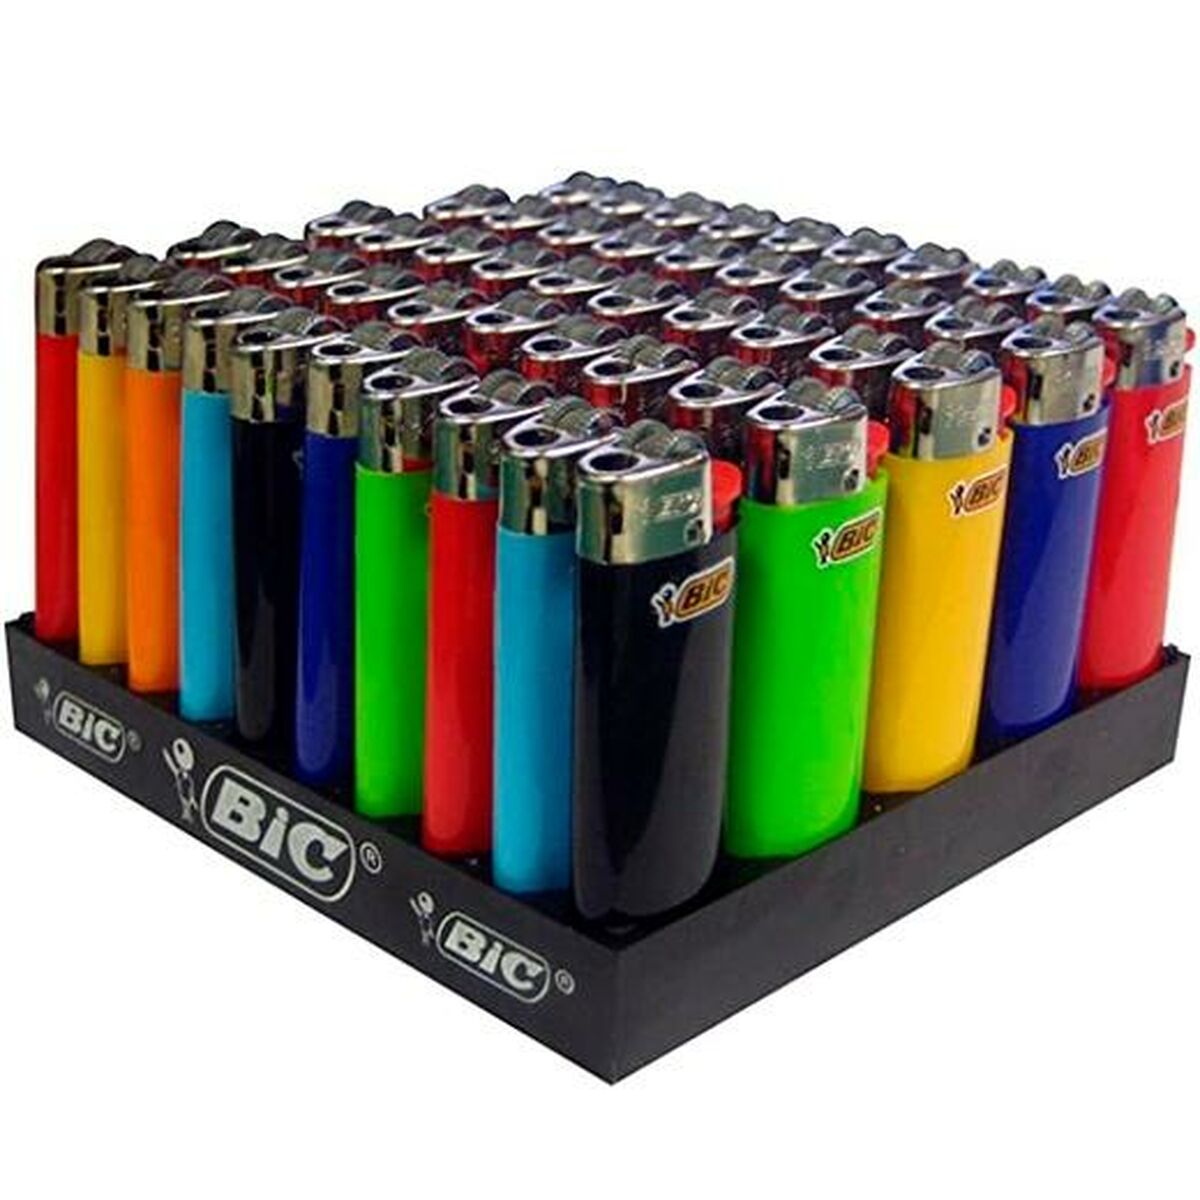 Lighter Bic J25 Mini Multicolour 50 Units